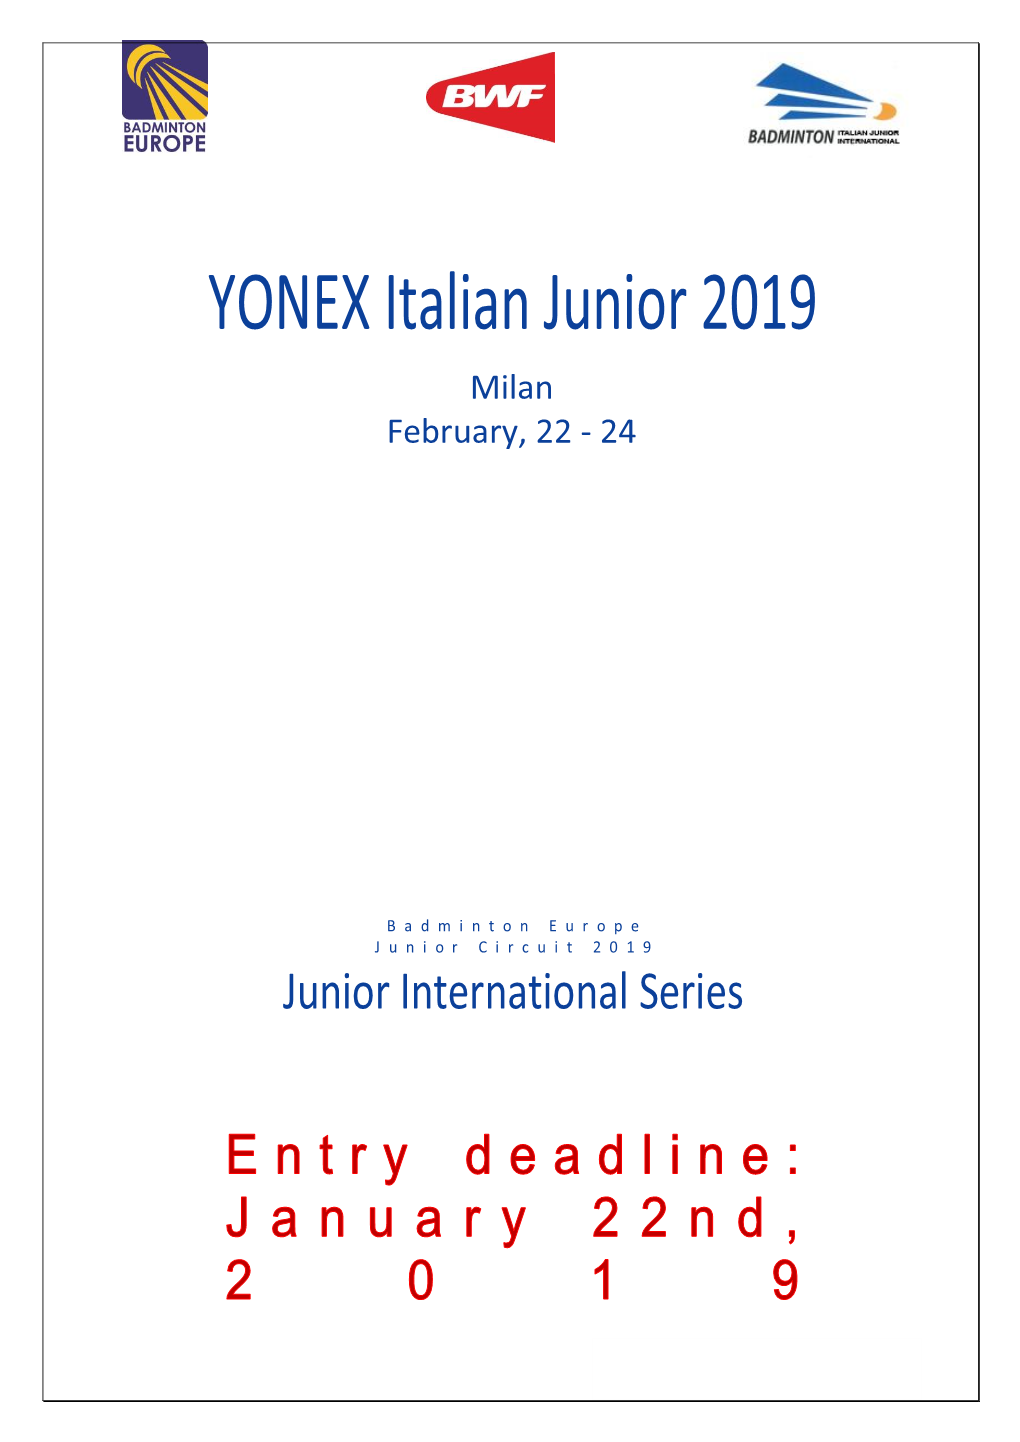 Official Invitation YONEX Italia